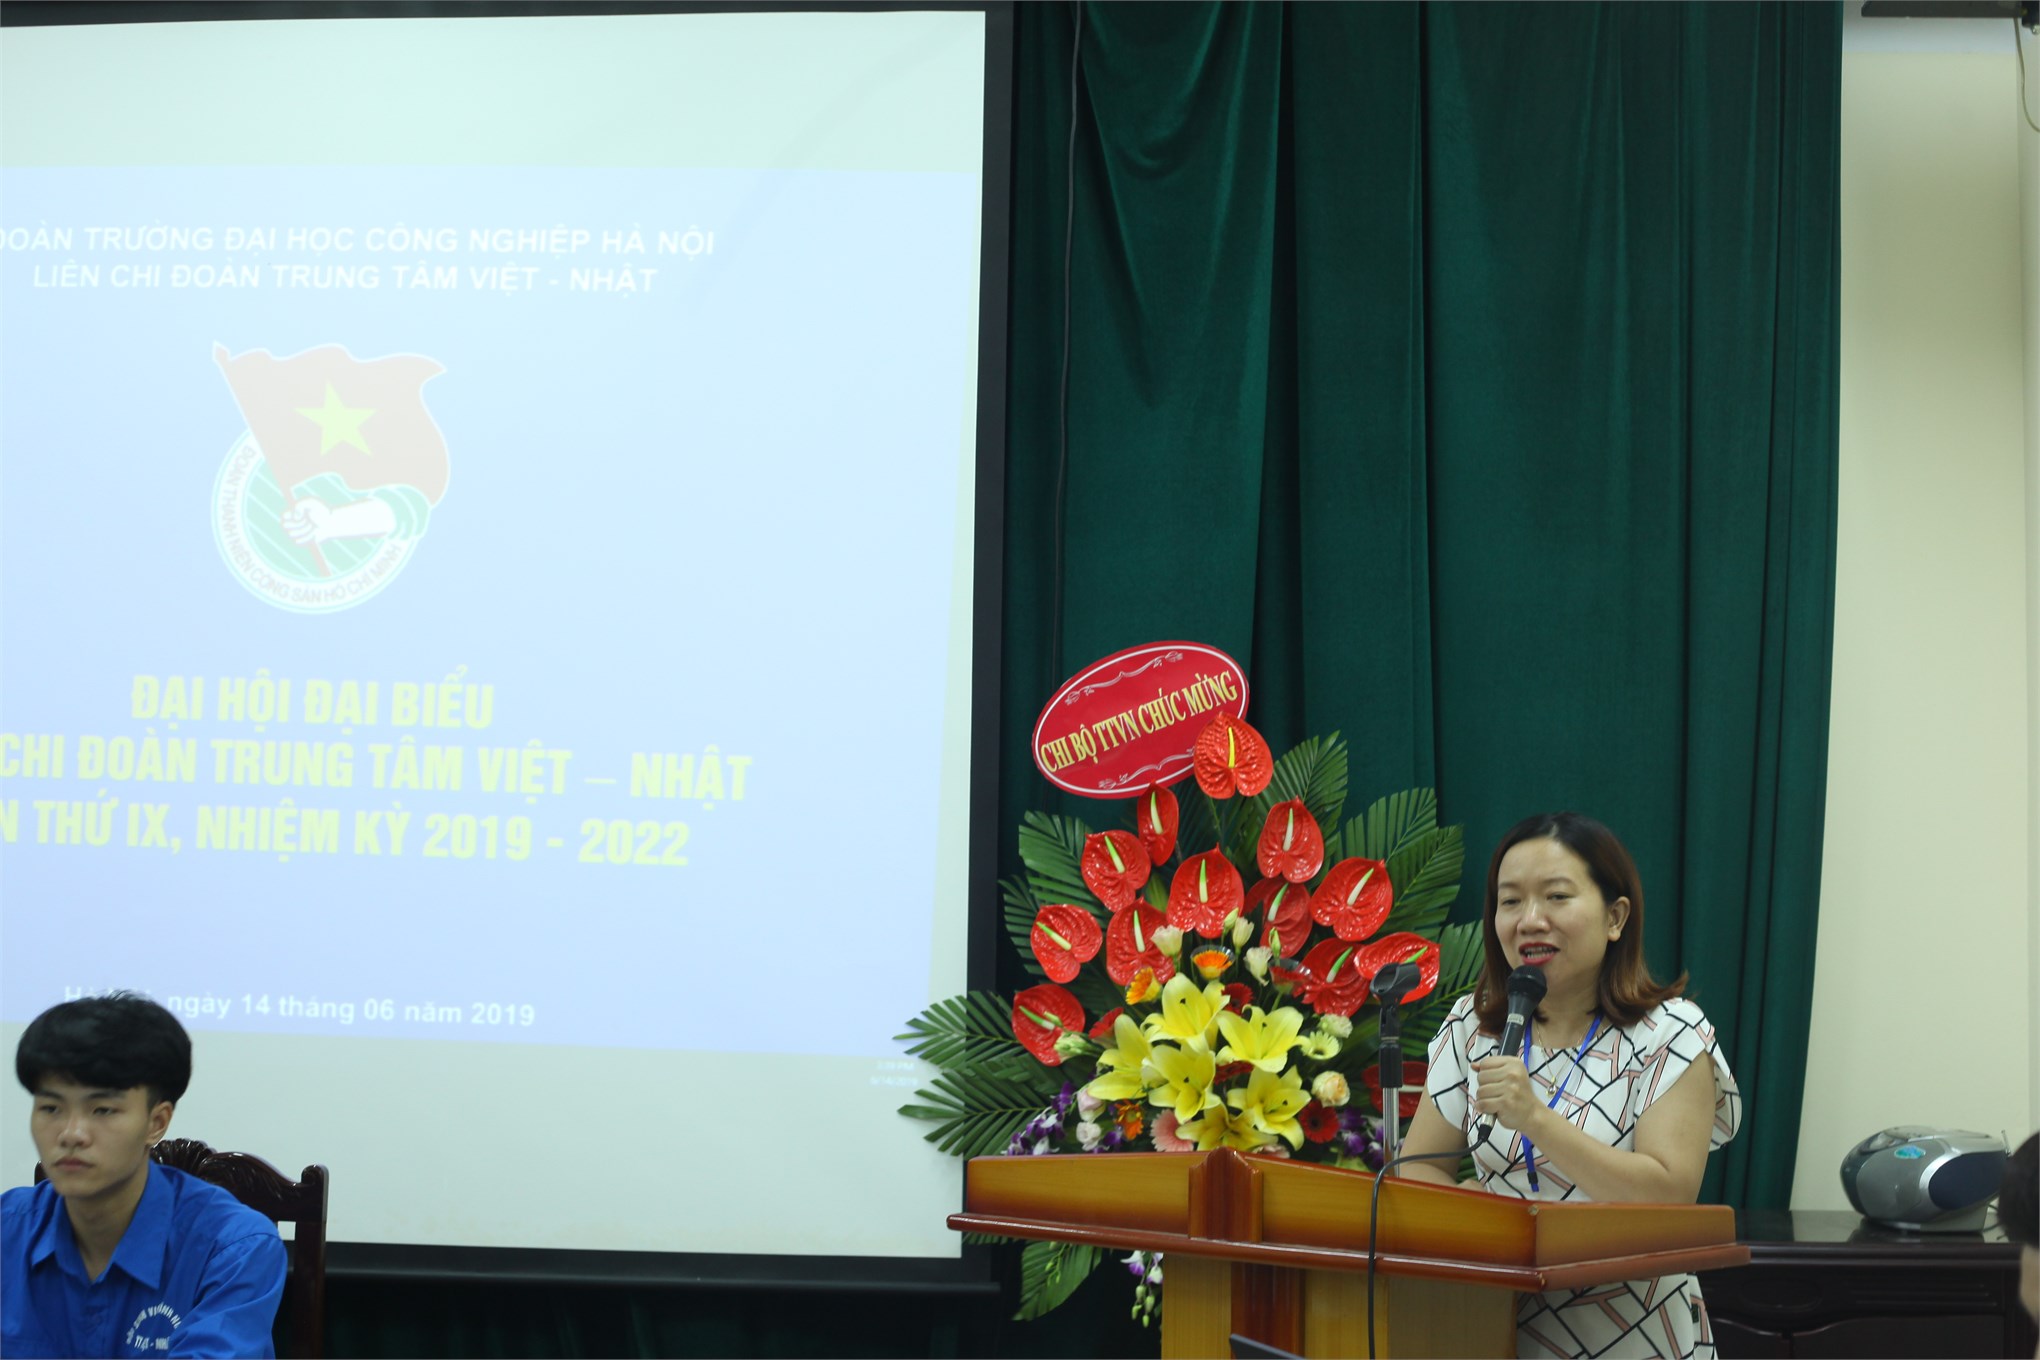 Đại hội Đại biểu Liên chi đoàn Trung tâm Việt Nhật lần thứ IX, nhiệm kỳ 2019-2022